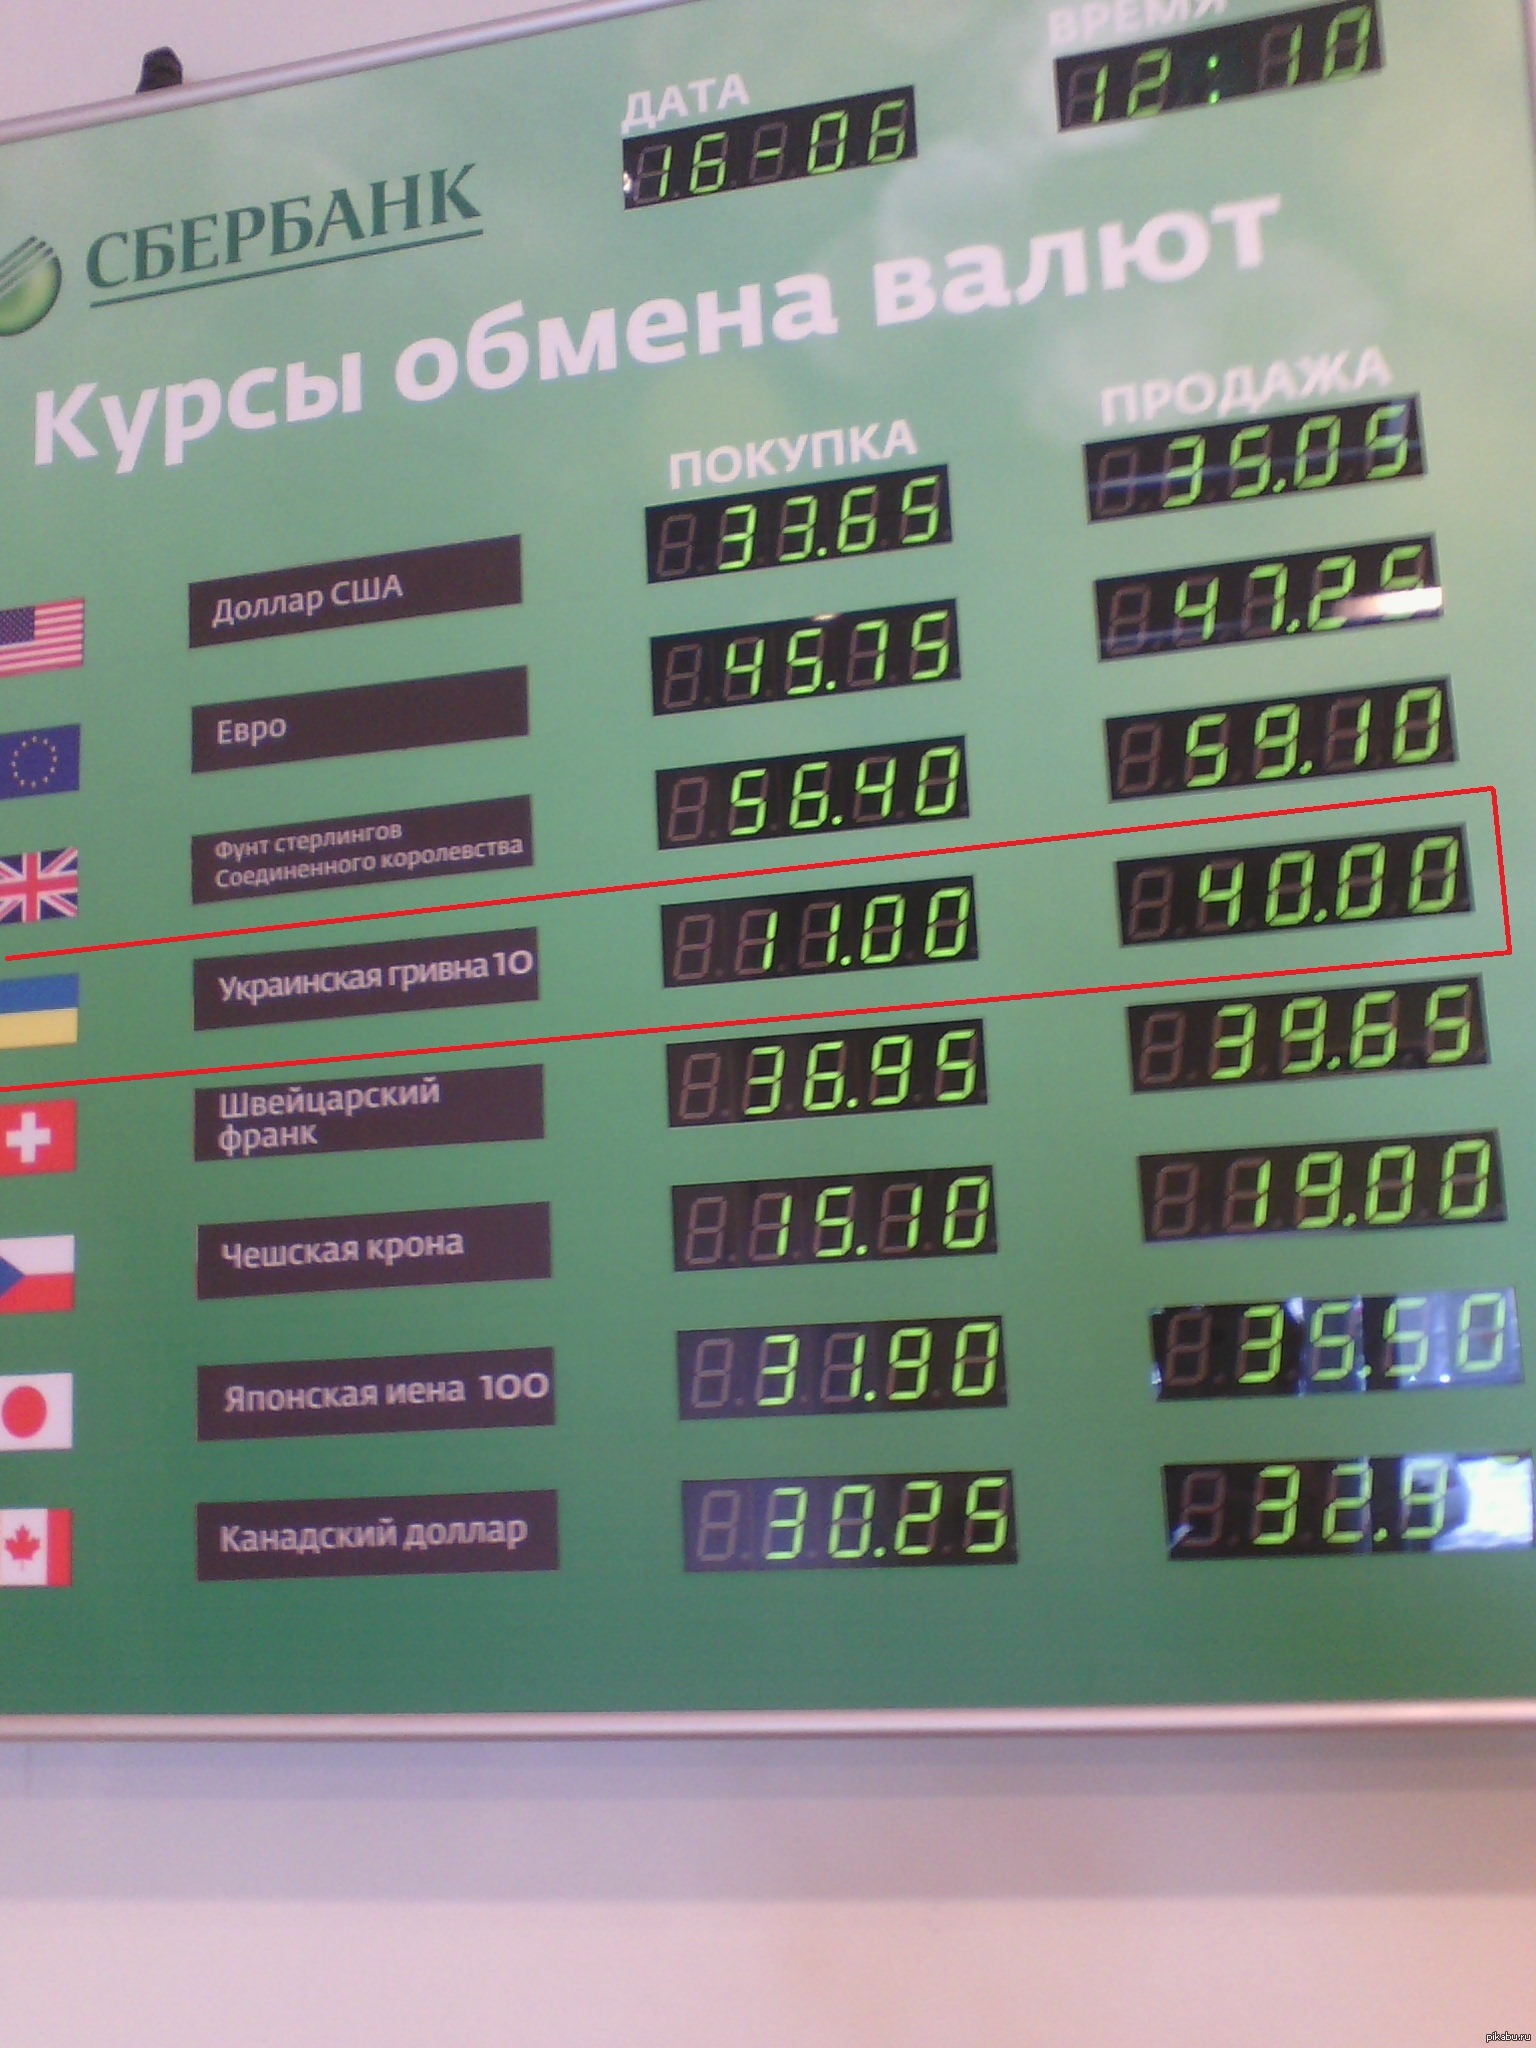 Сбербанк можно купить валюту. Сбербанк в Украине с гривнами. Запрещенные гривны в России.